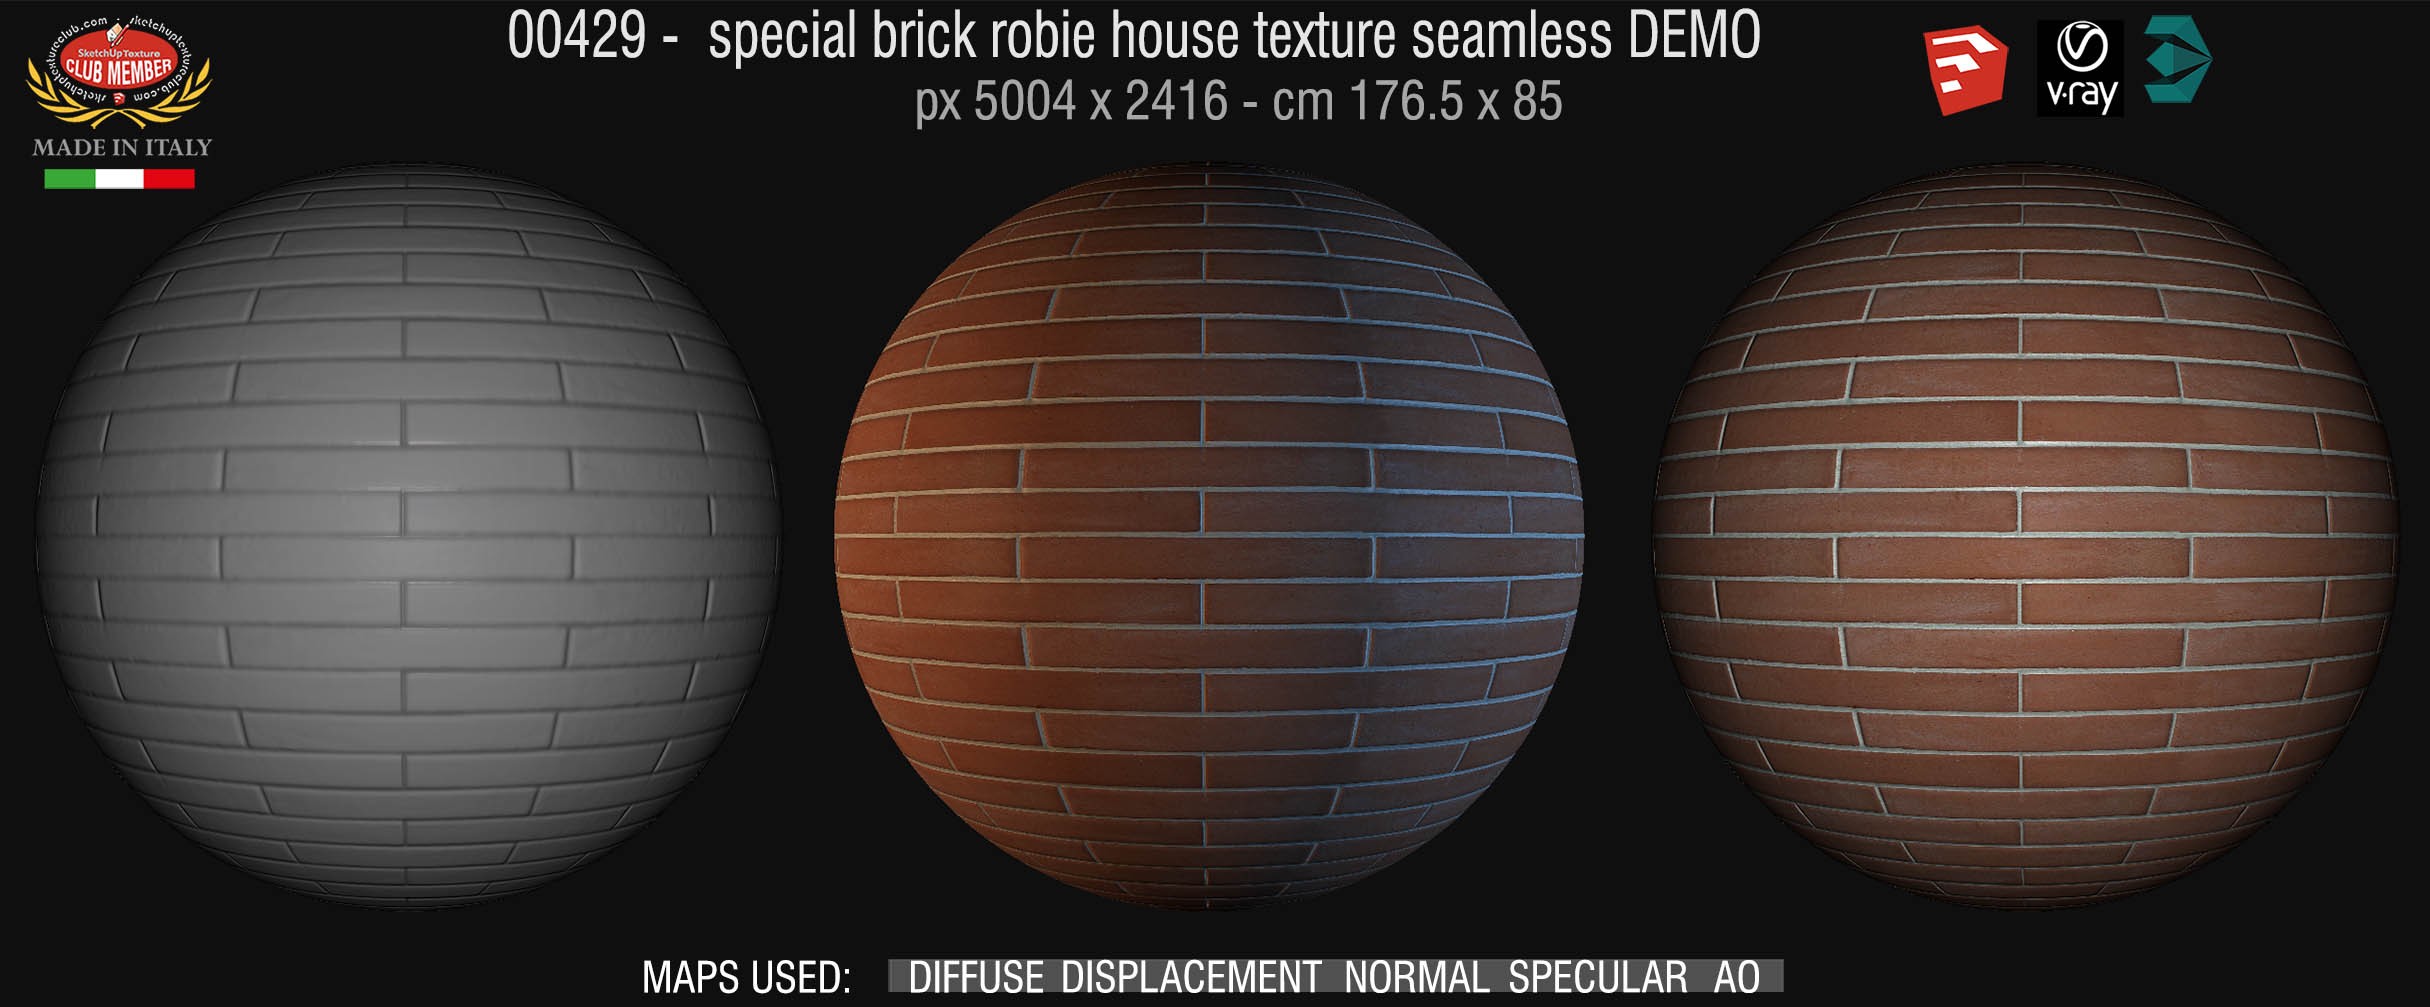 00429 special brick robie house texture seamless + maps DEMO